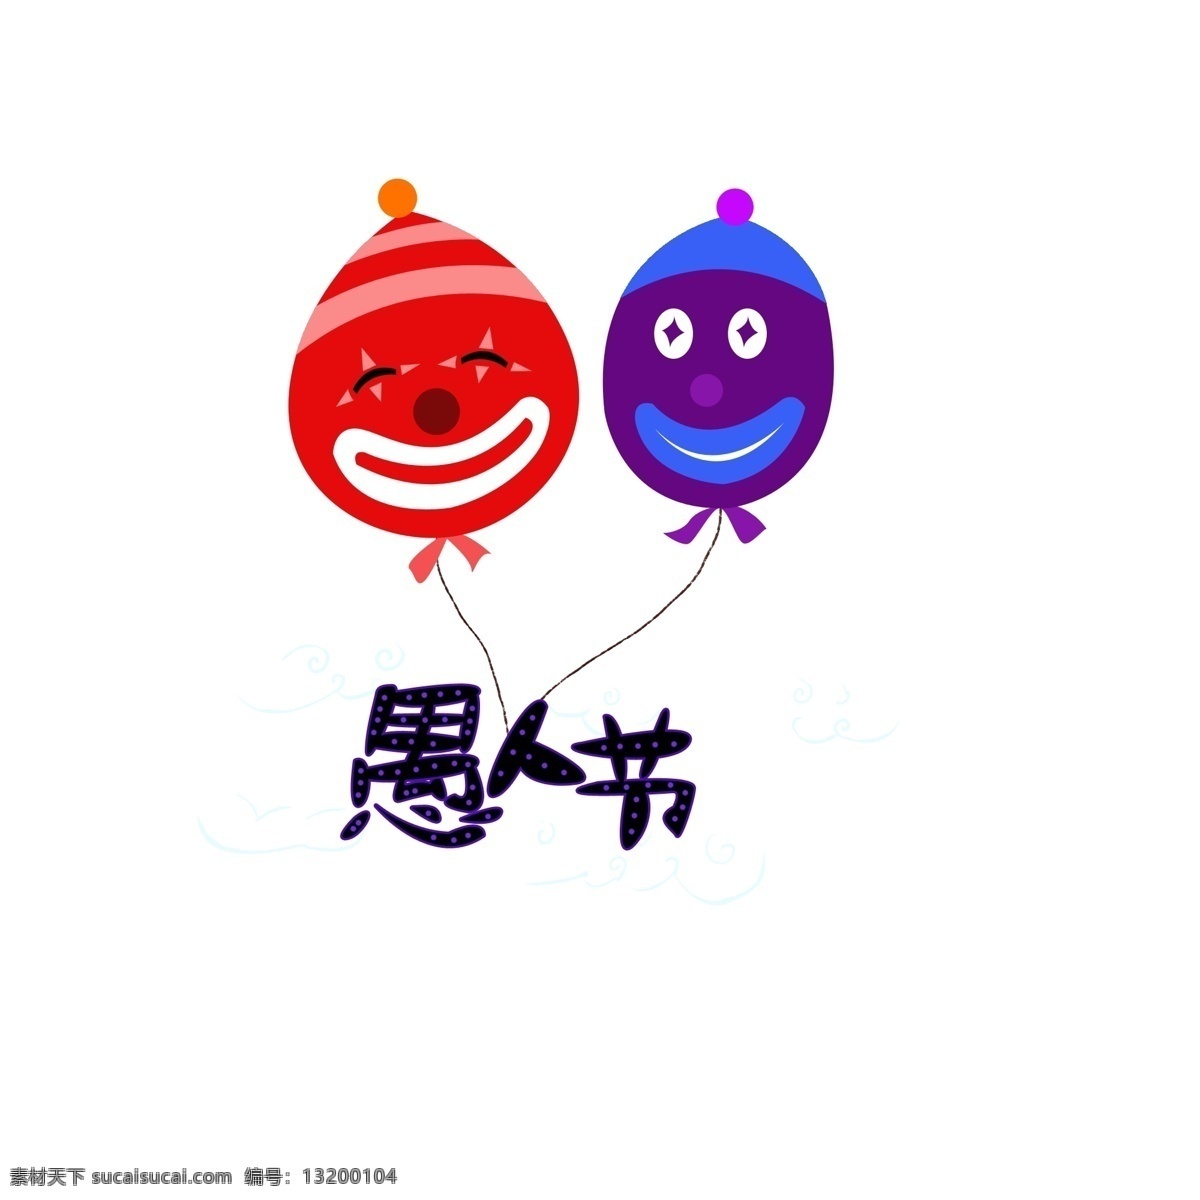 愚人节 艺术 字 卡通 可爱 装饰 愚人节艺术字 艺术字 愚人节气球 小丑气球